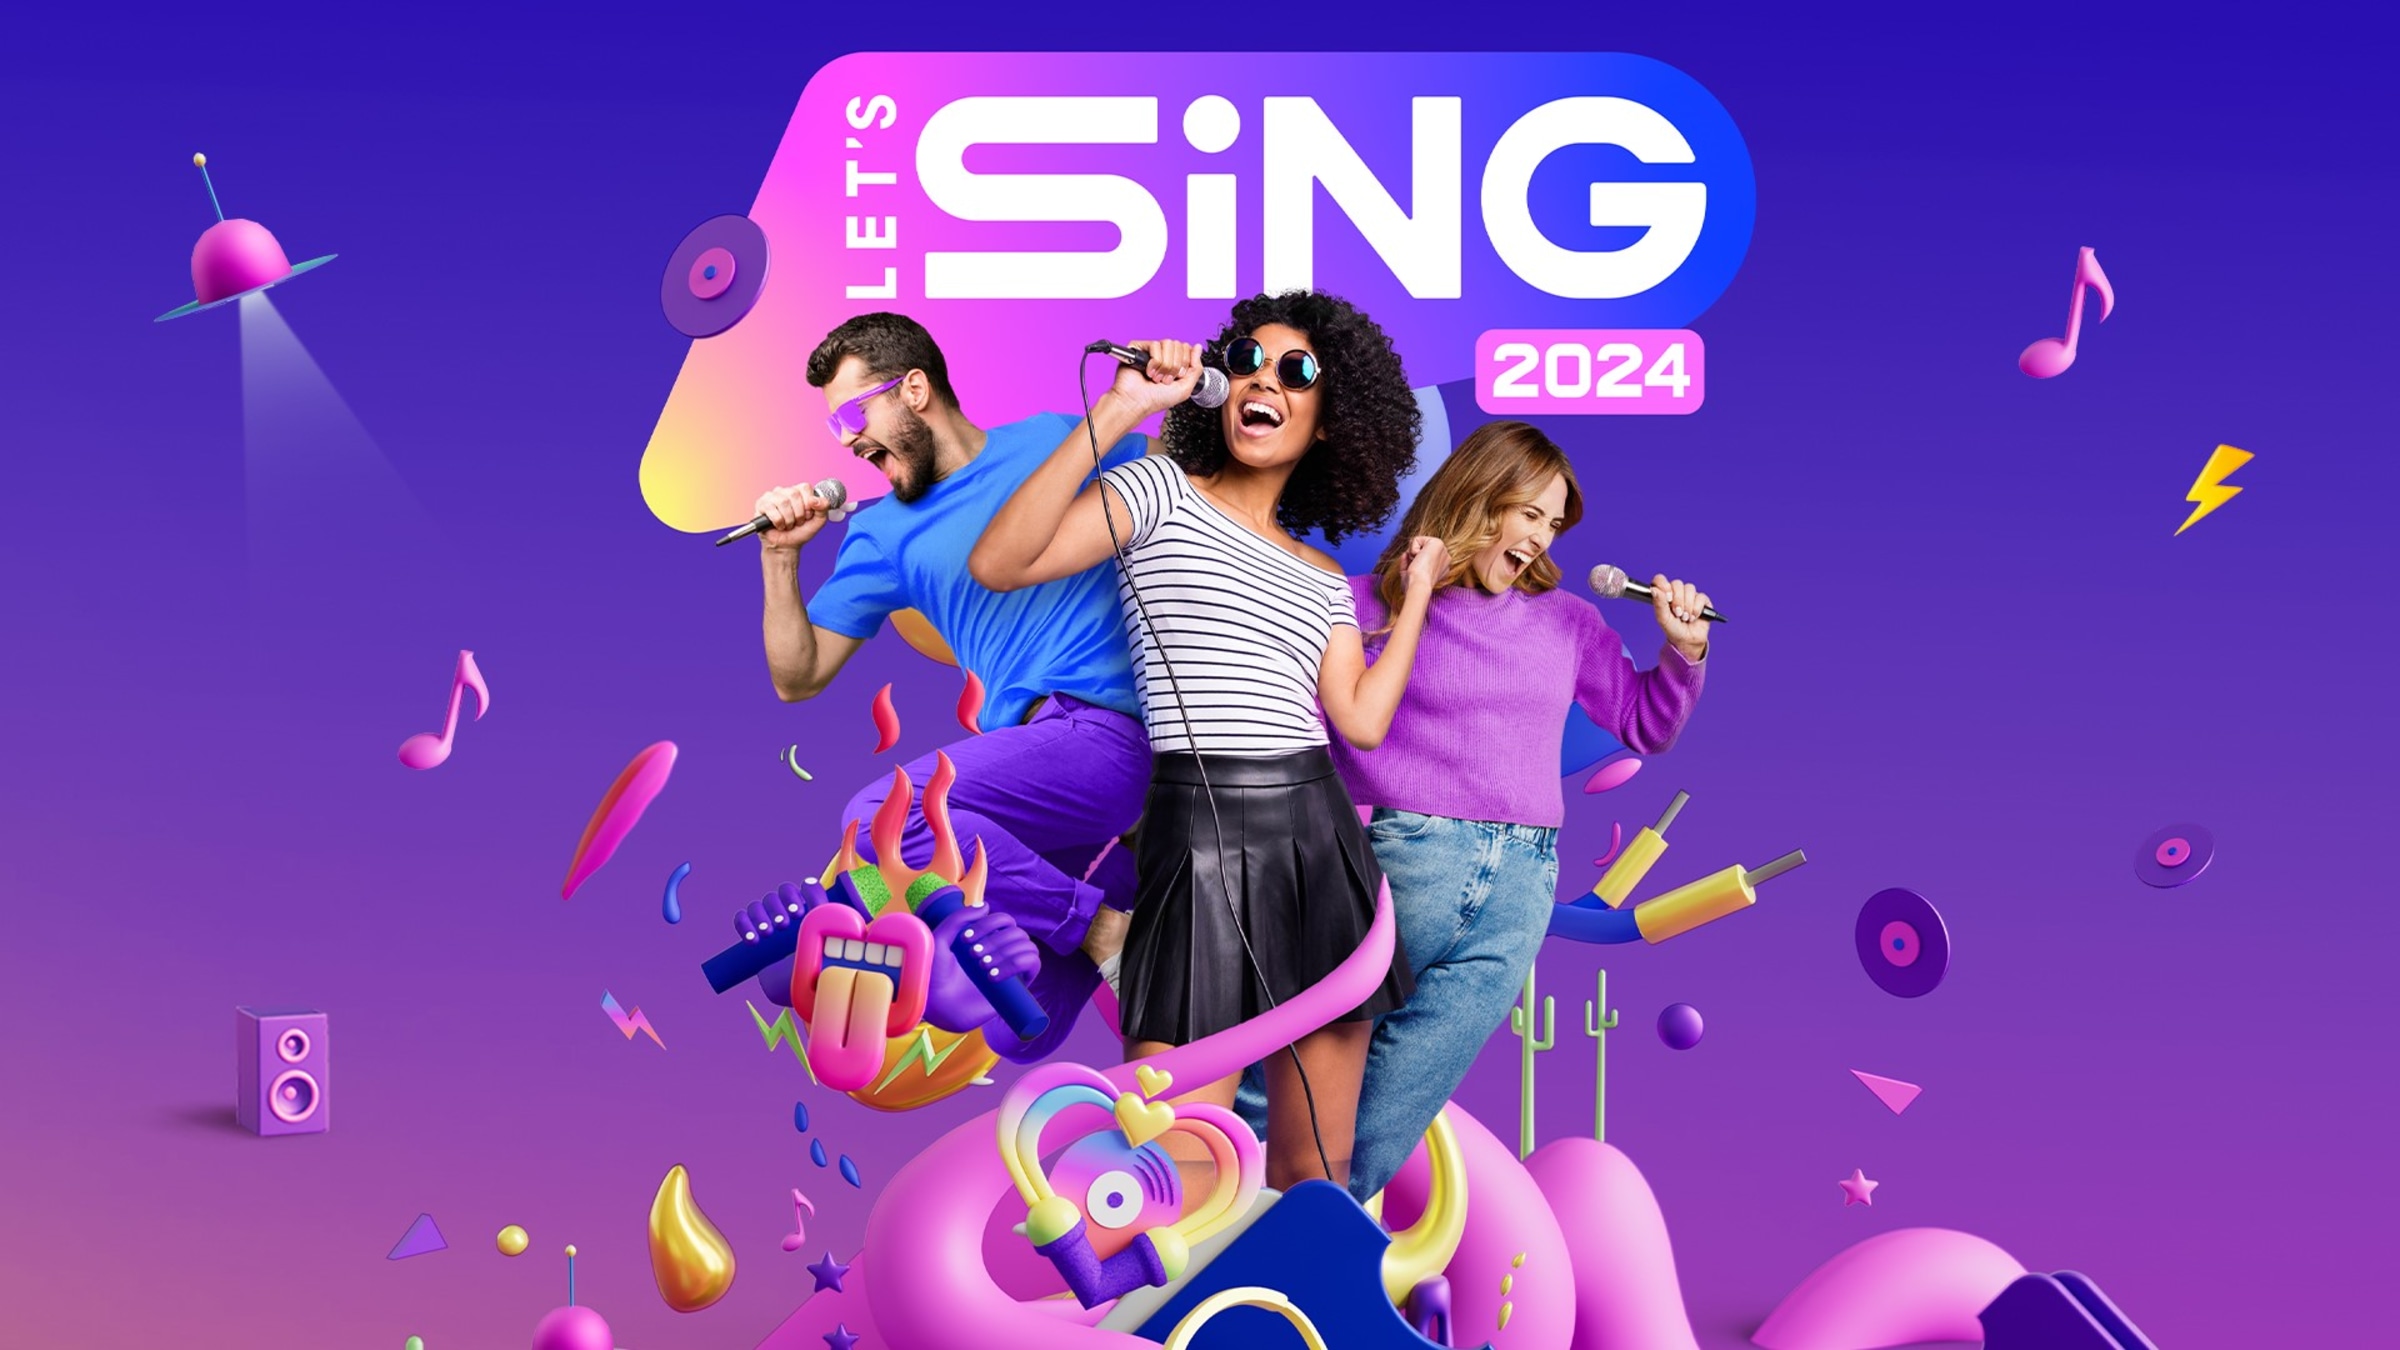 Let's Sing 2024 - German Version' für 'Nintendo Switch' kaufen